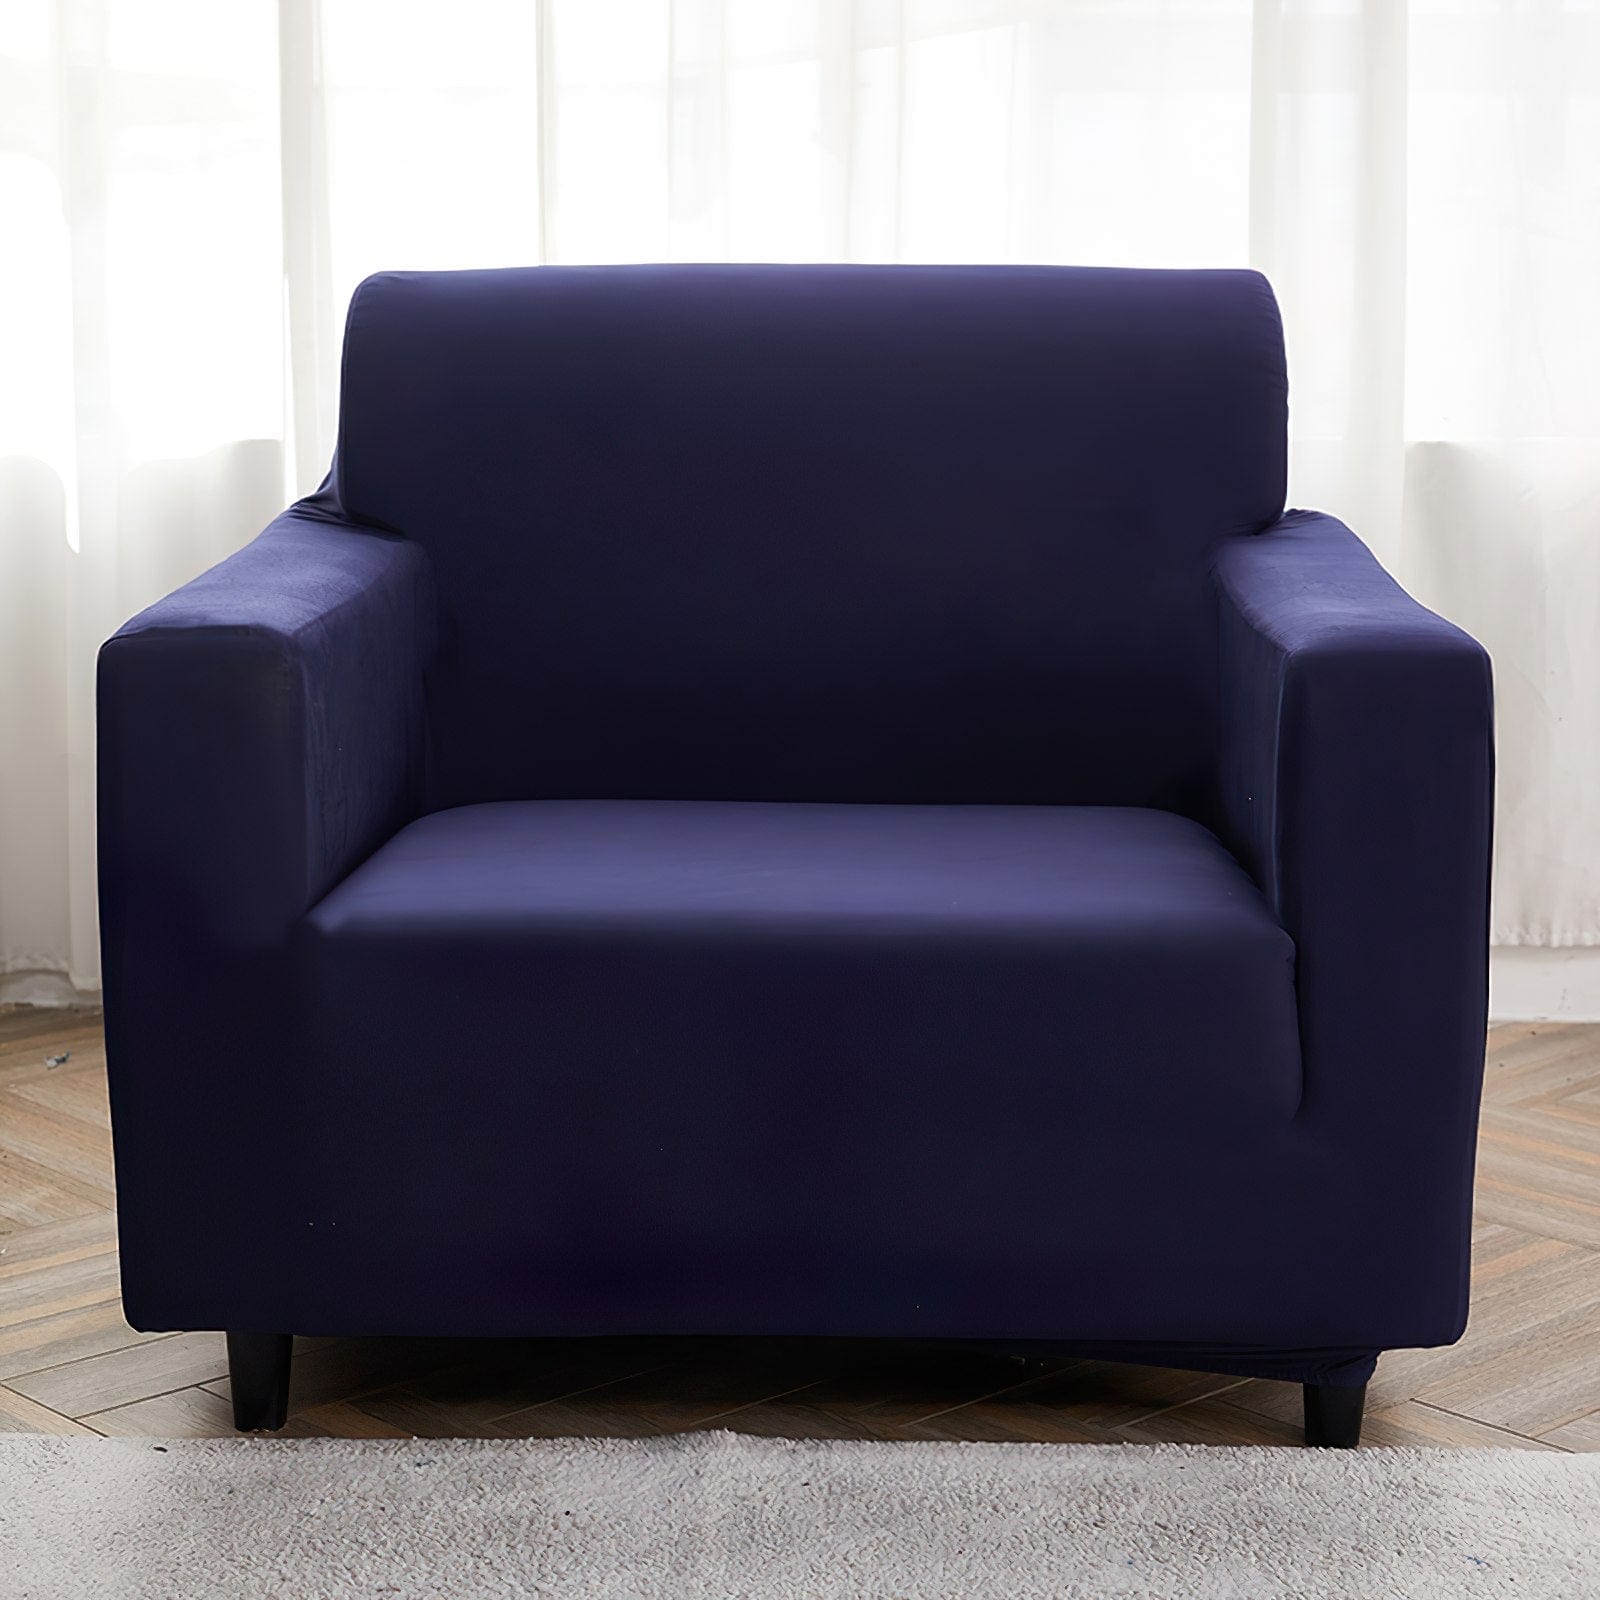 Azul marino - Fundas para sofás y sofás de esquina - La Casa de las Fundas